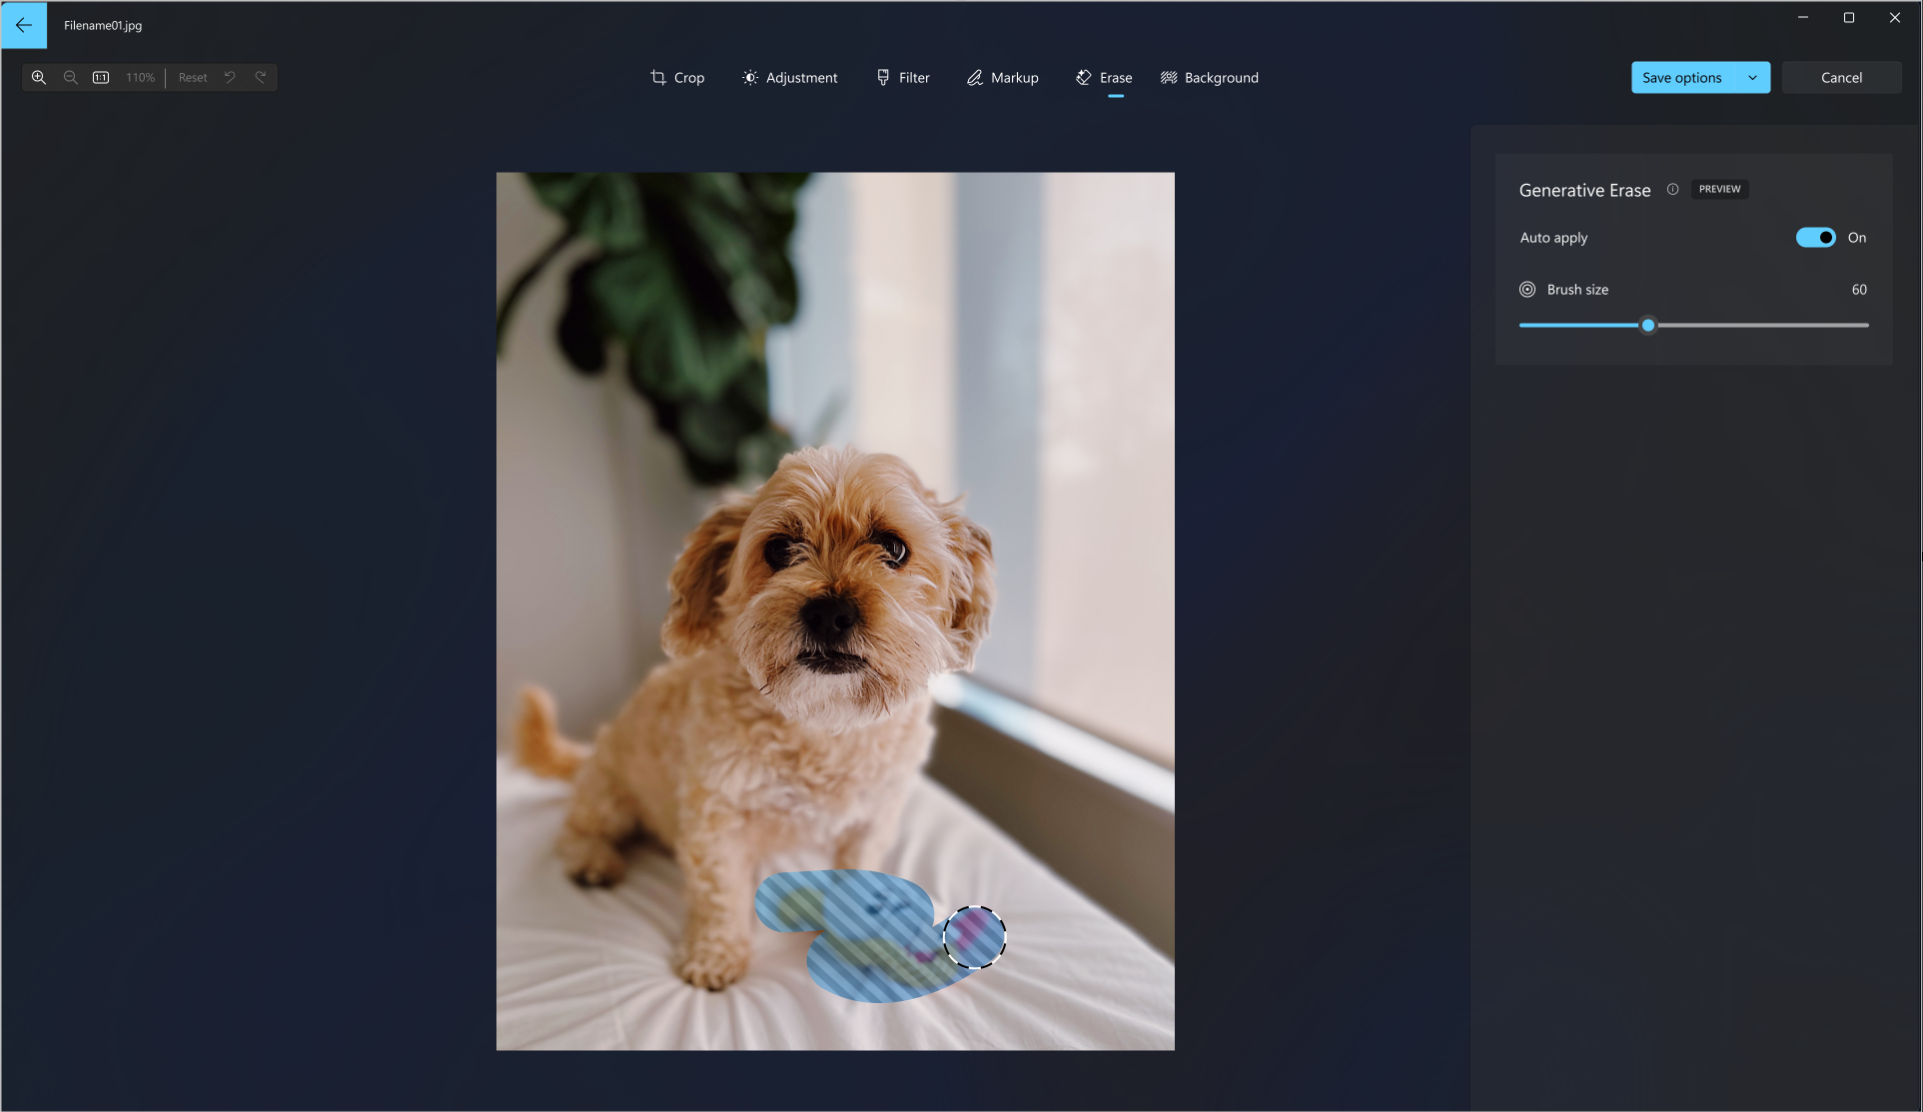 在狗的相片上使用生成清除工具的螢幕快照，從圖片中清除狗的玩具。